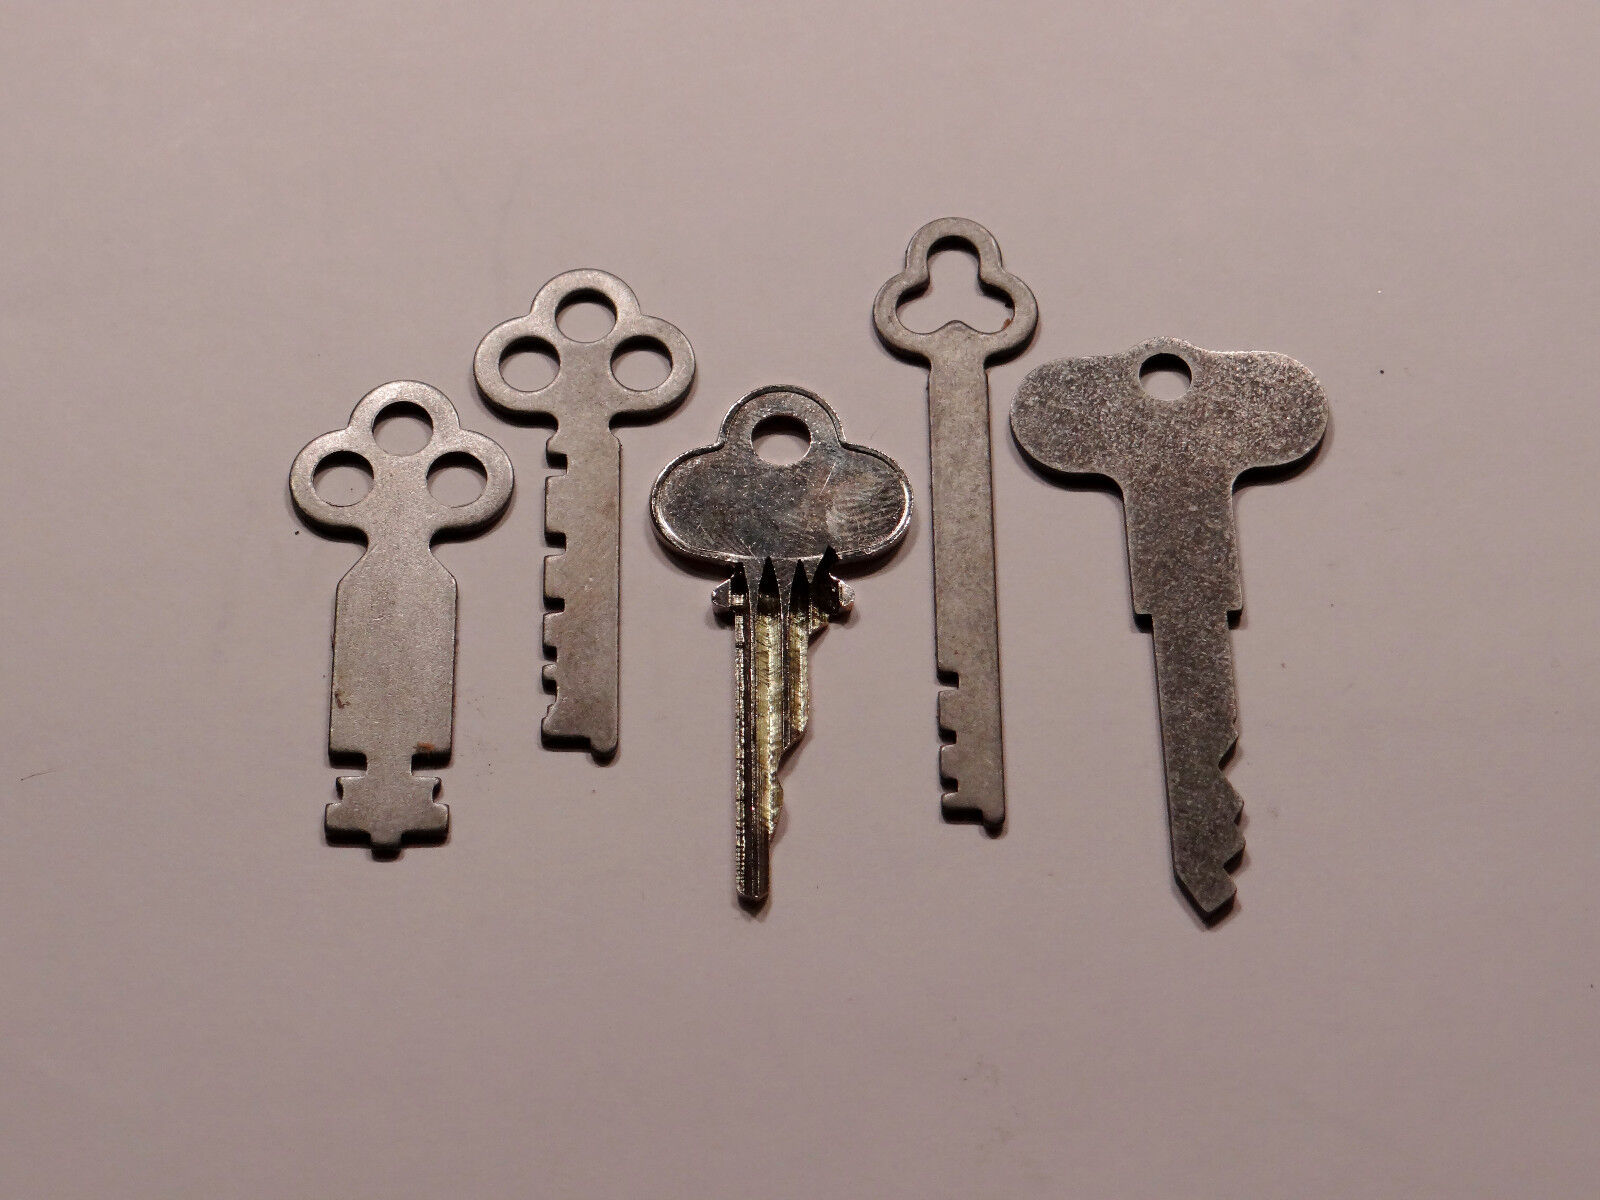 Antique National Cash Register Keys 1, 2, 3A, 5 & Reset Key 300/700 NCR